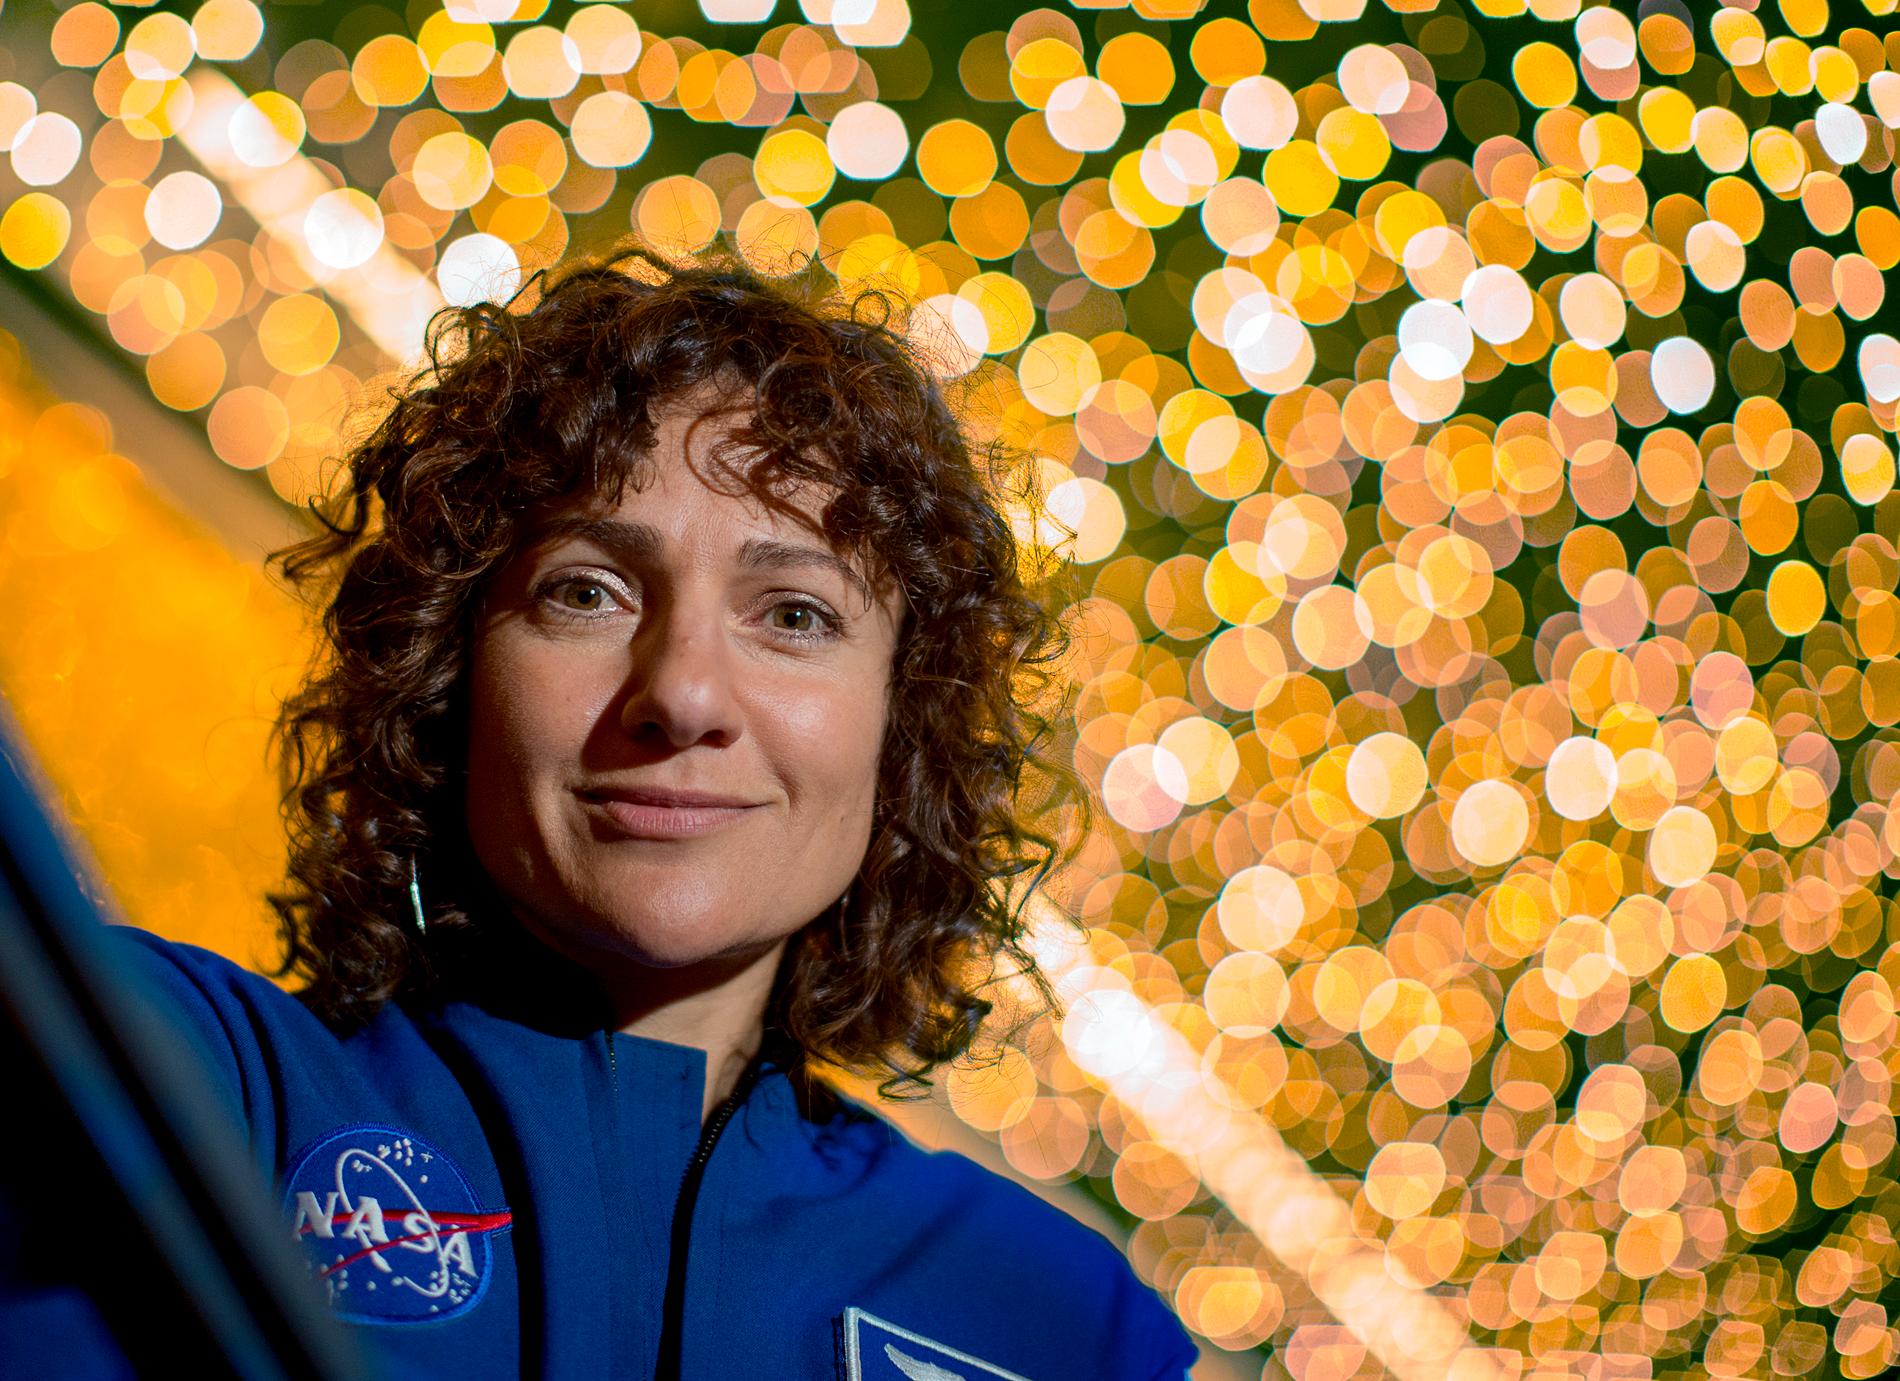 Jessica Meir blev antagen till Nasas astronautprogram år 2013. Nu är det snart dags för hennes första rymdresa.